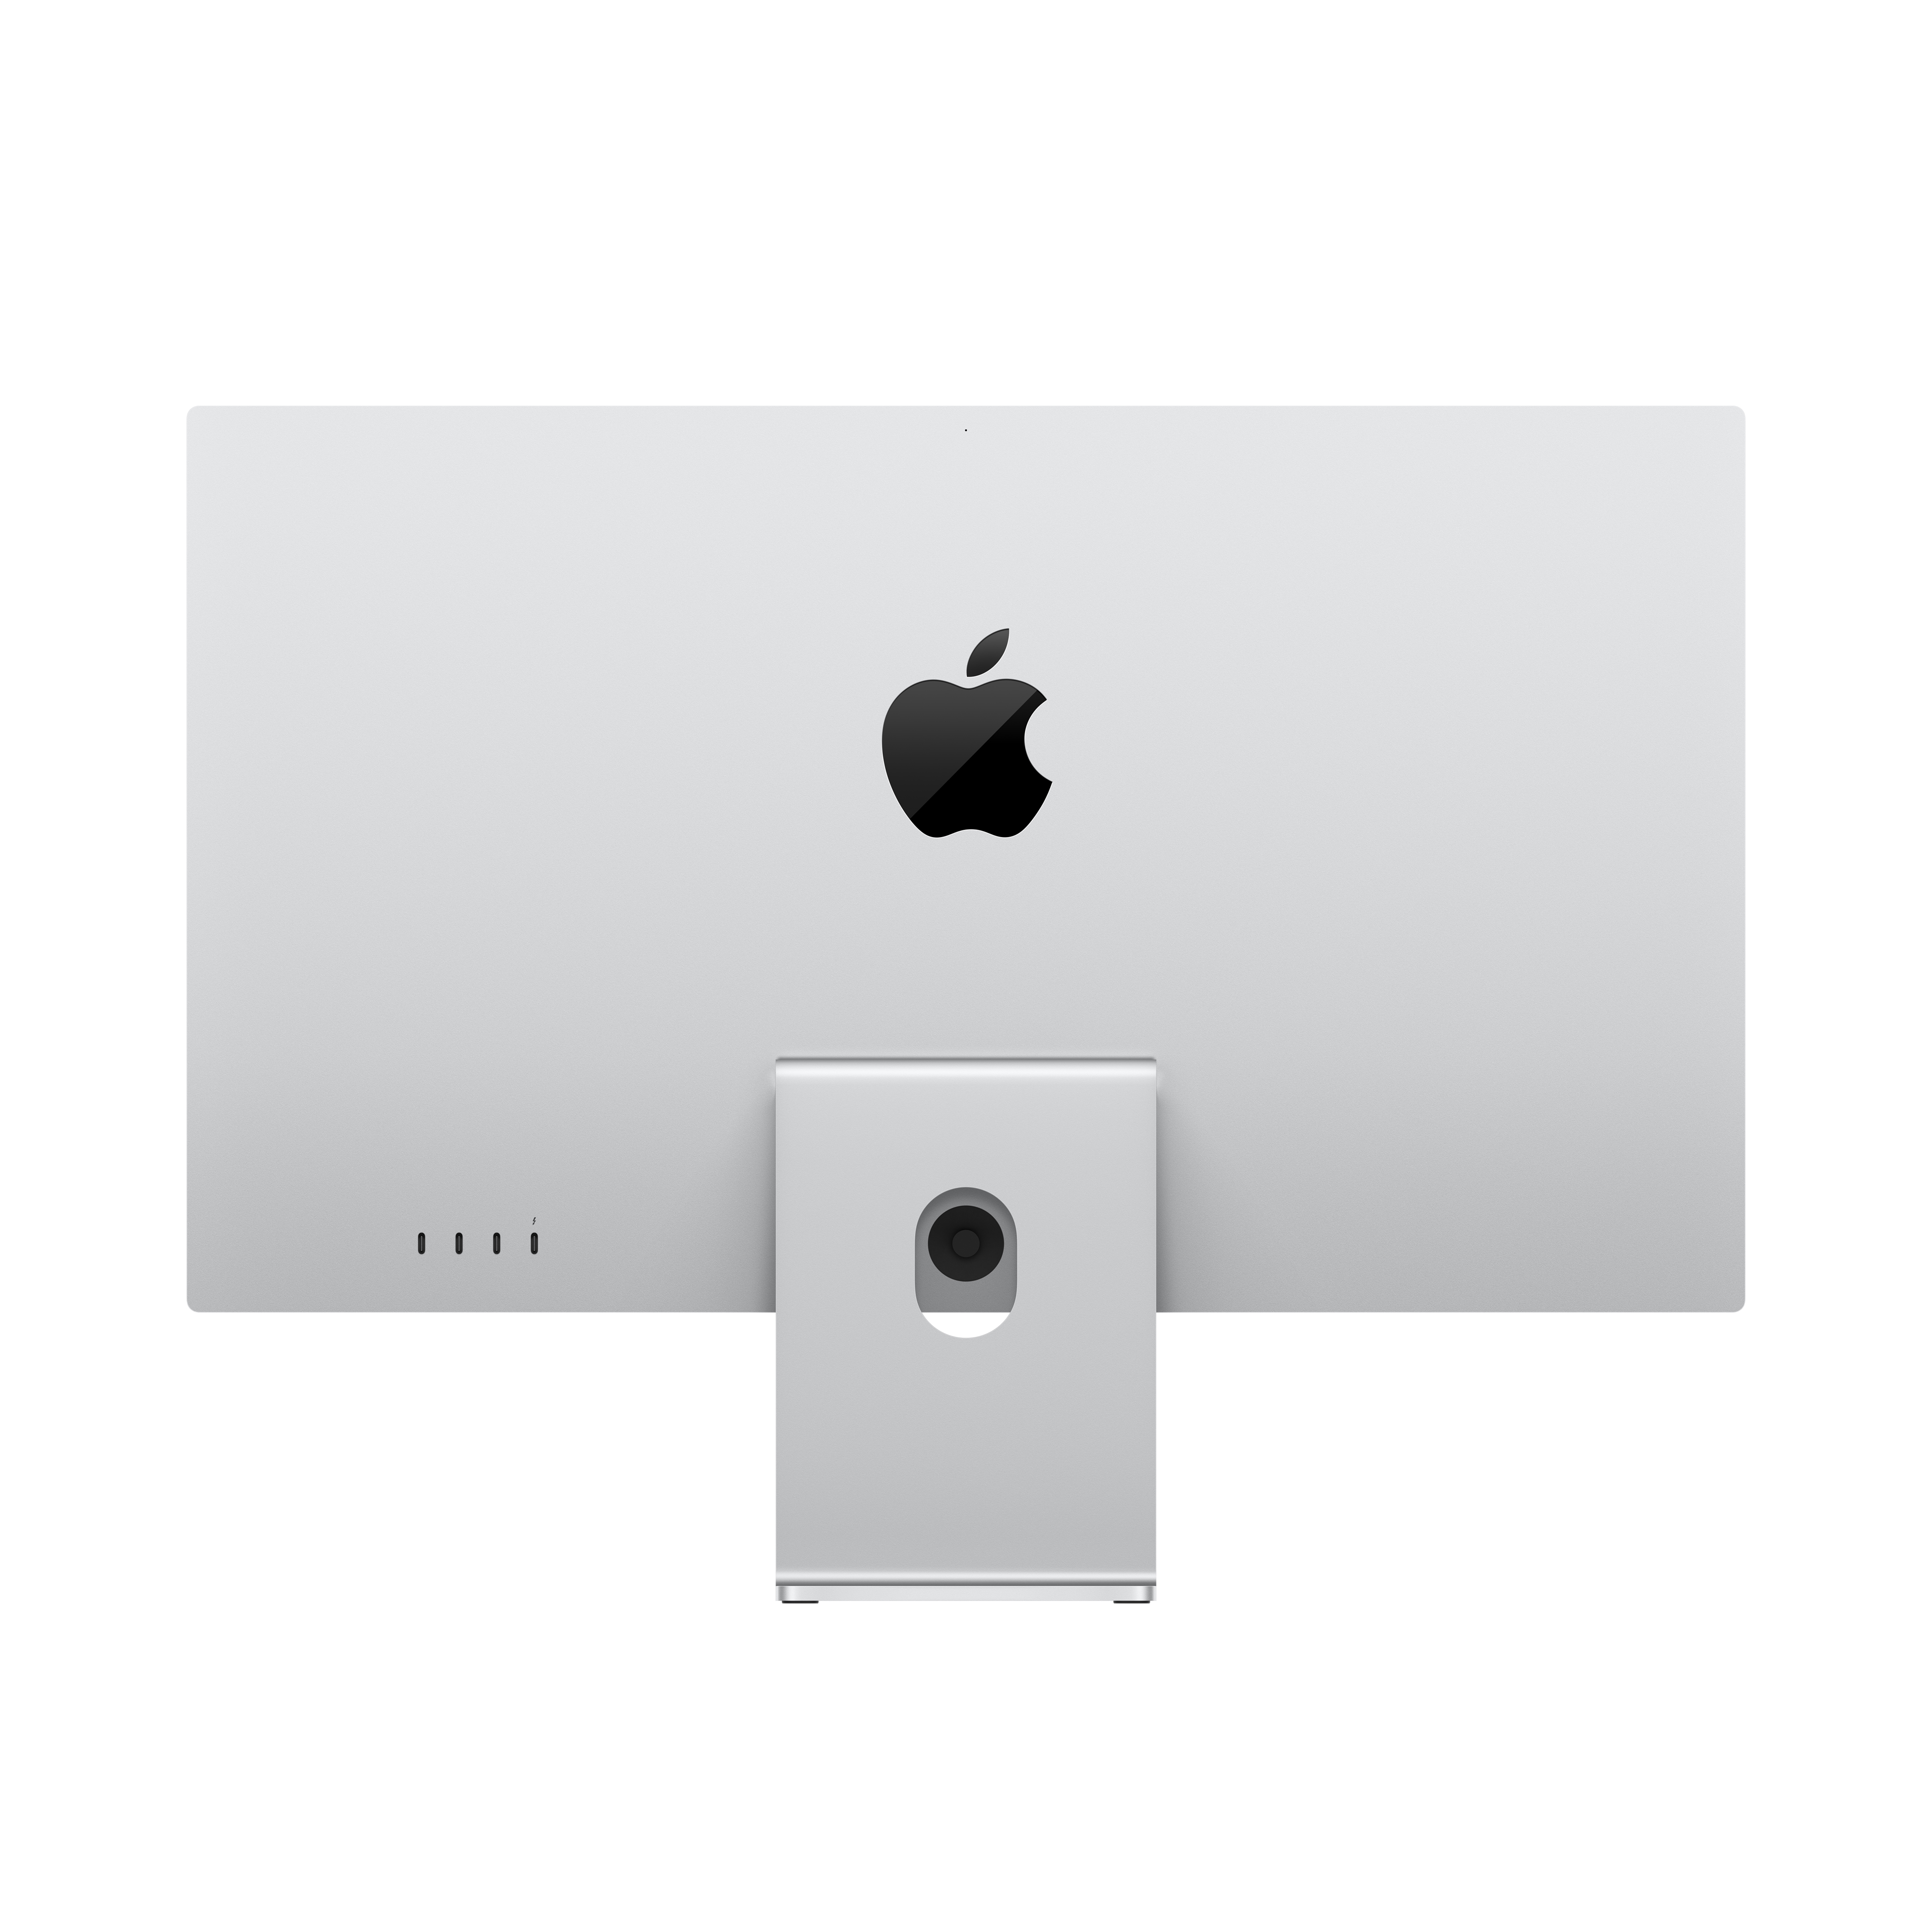 Apple Studio Display 27" – neigungs- und höhenverstellbarer Standfuß